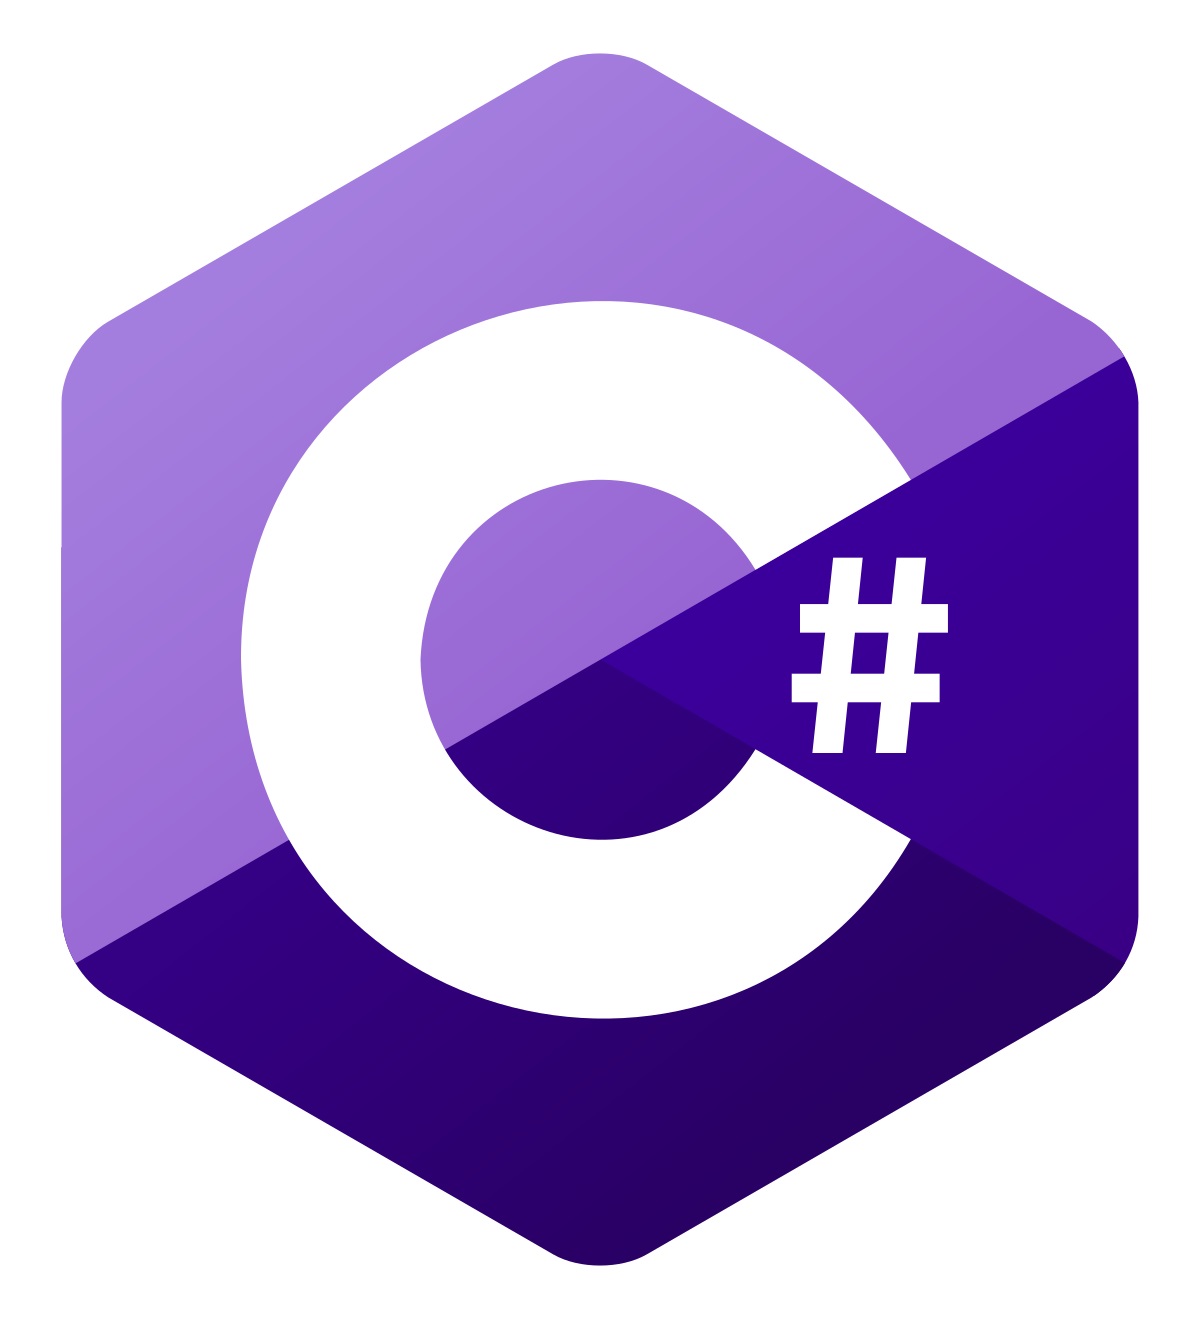 C_Sharp_logo